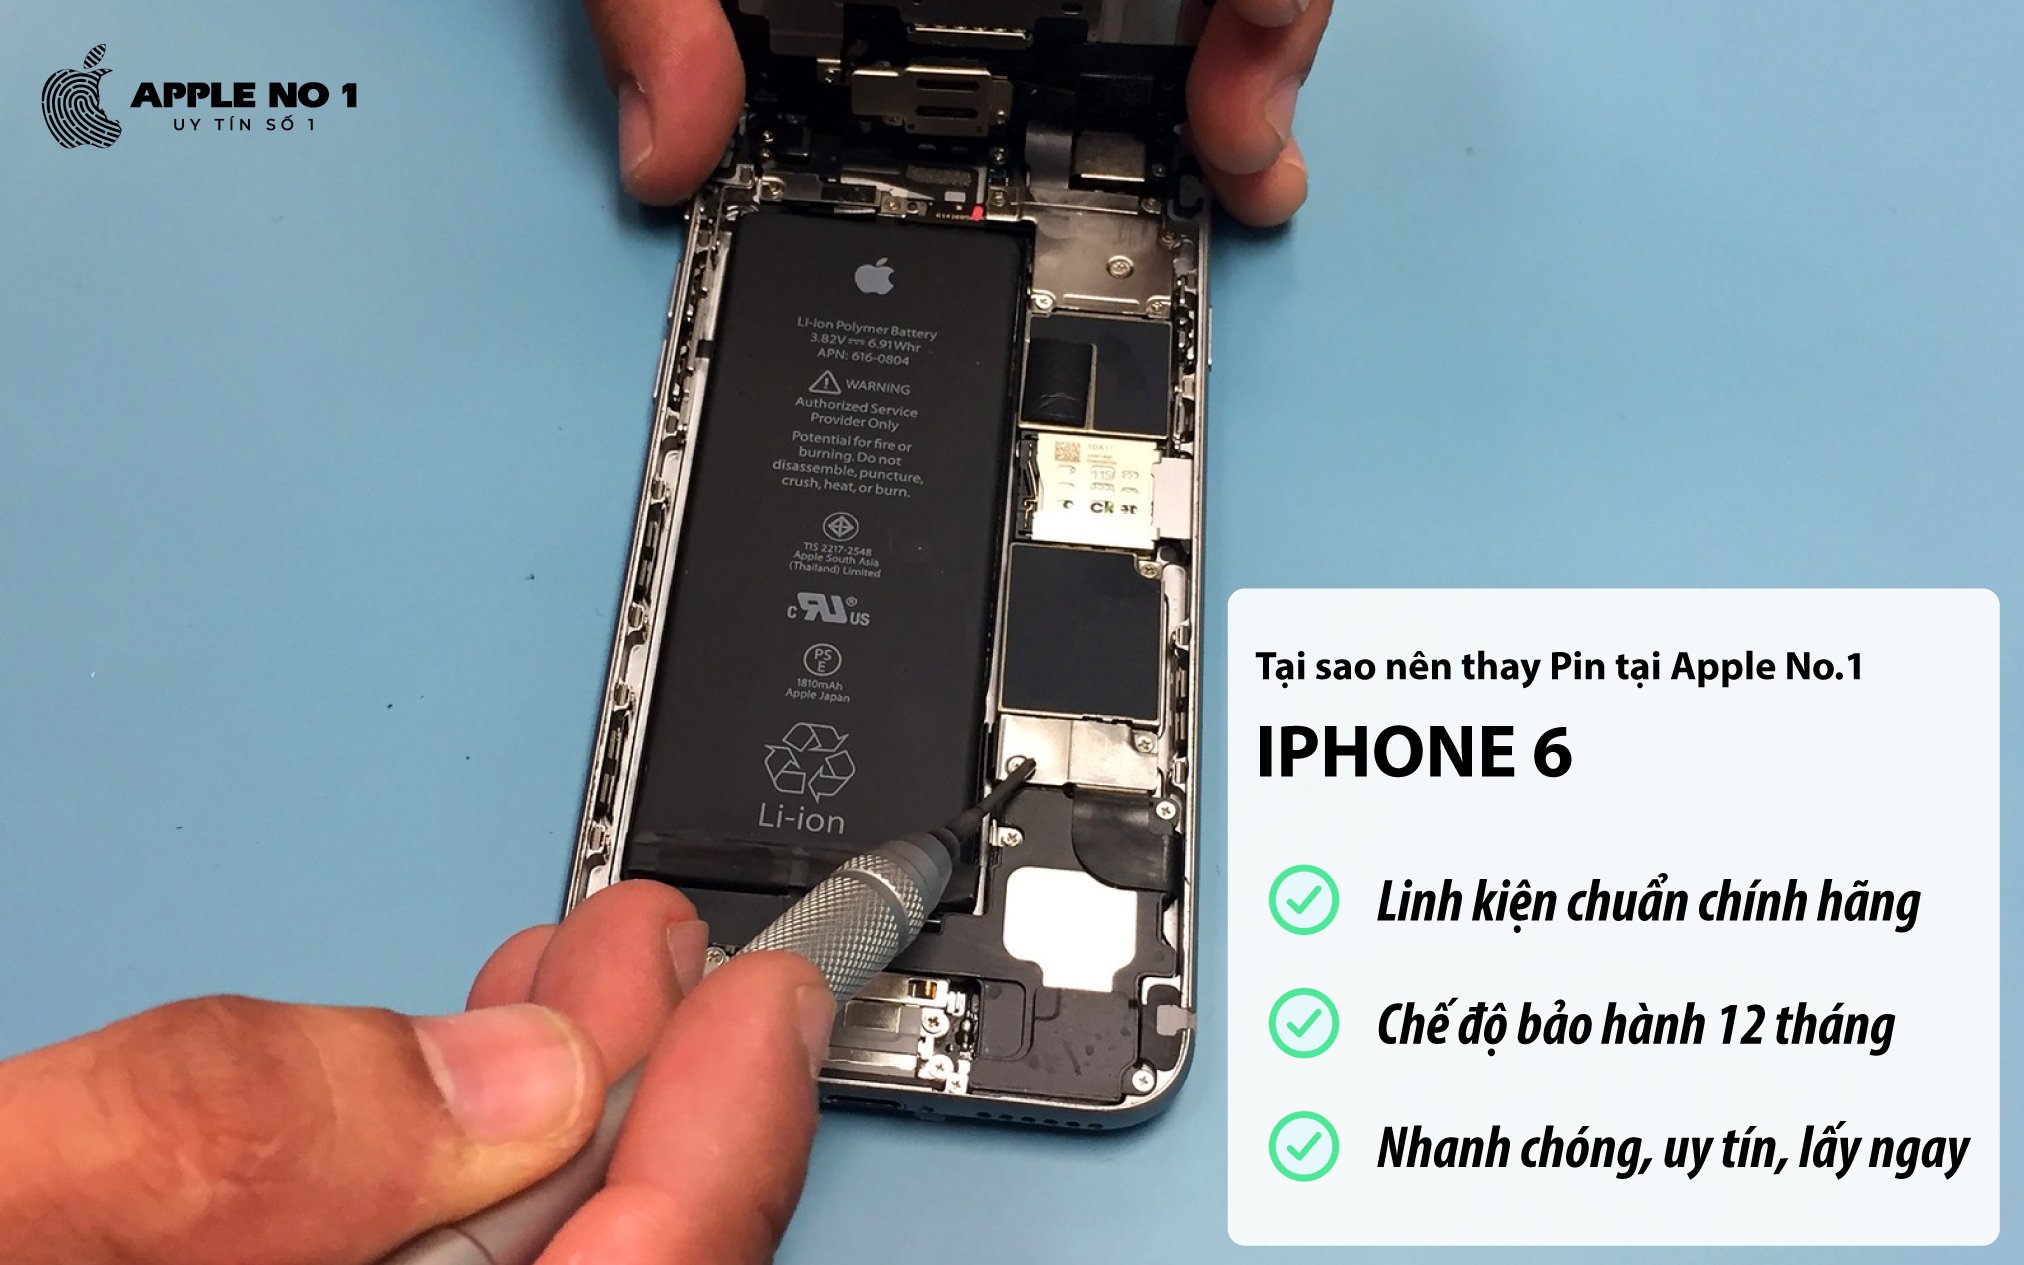 Dịch vụ thay pin iPhone 6 dung lượng chuẩn chính hãng tại Hà Nội